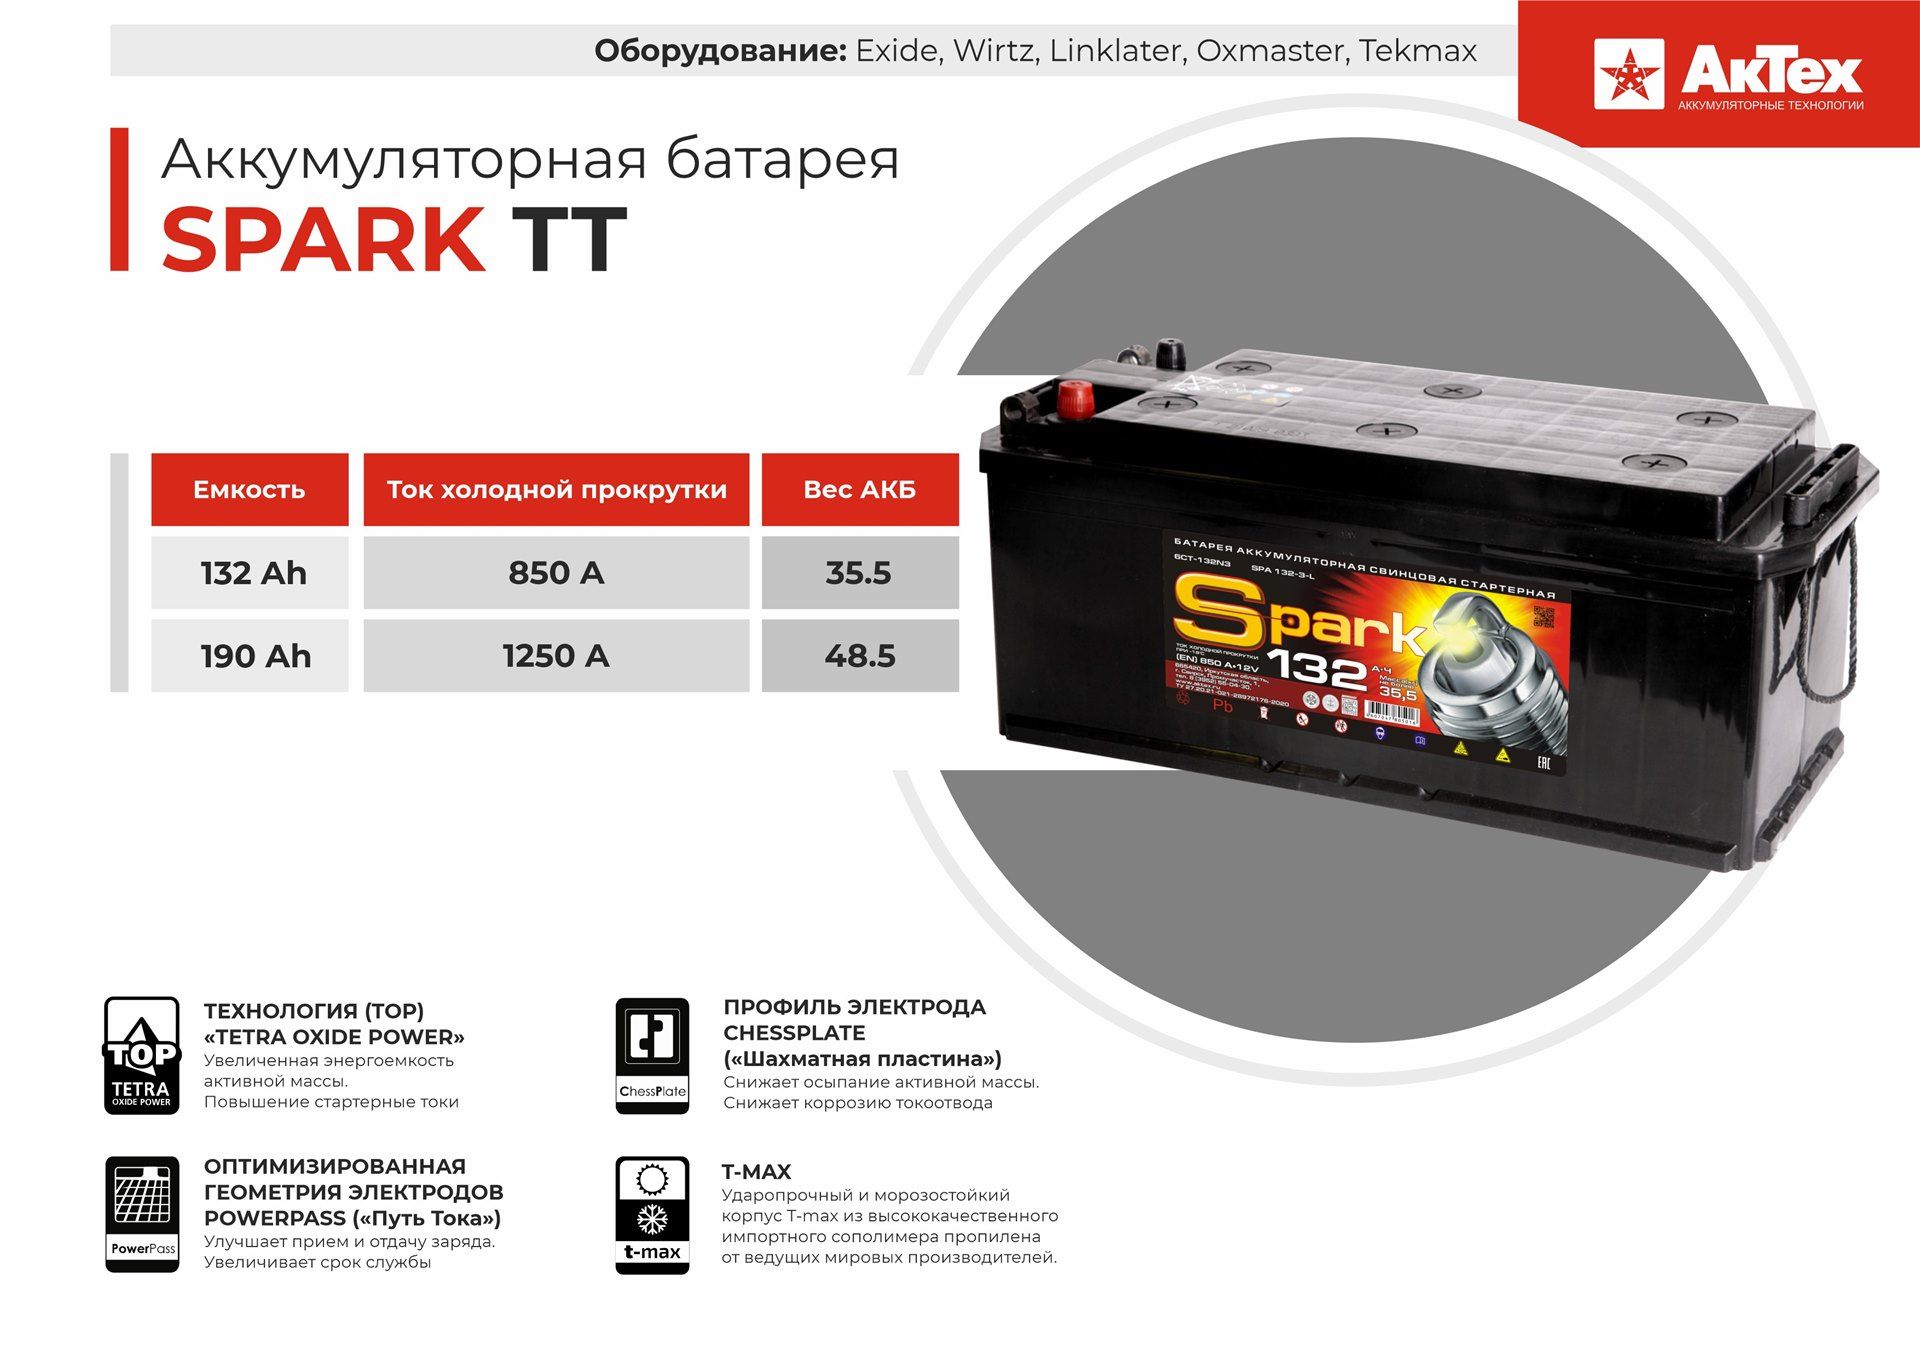 Аккумуляторная батарея Spark TT